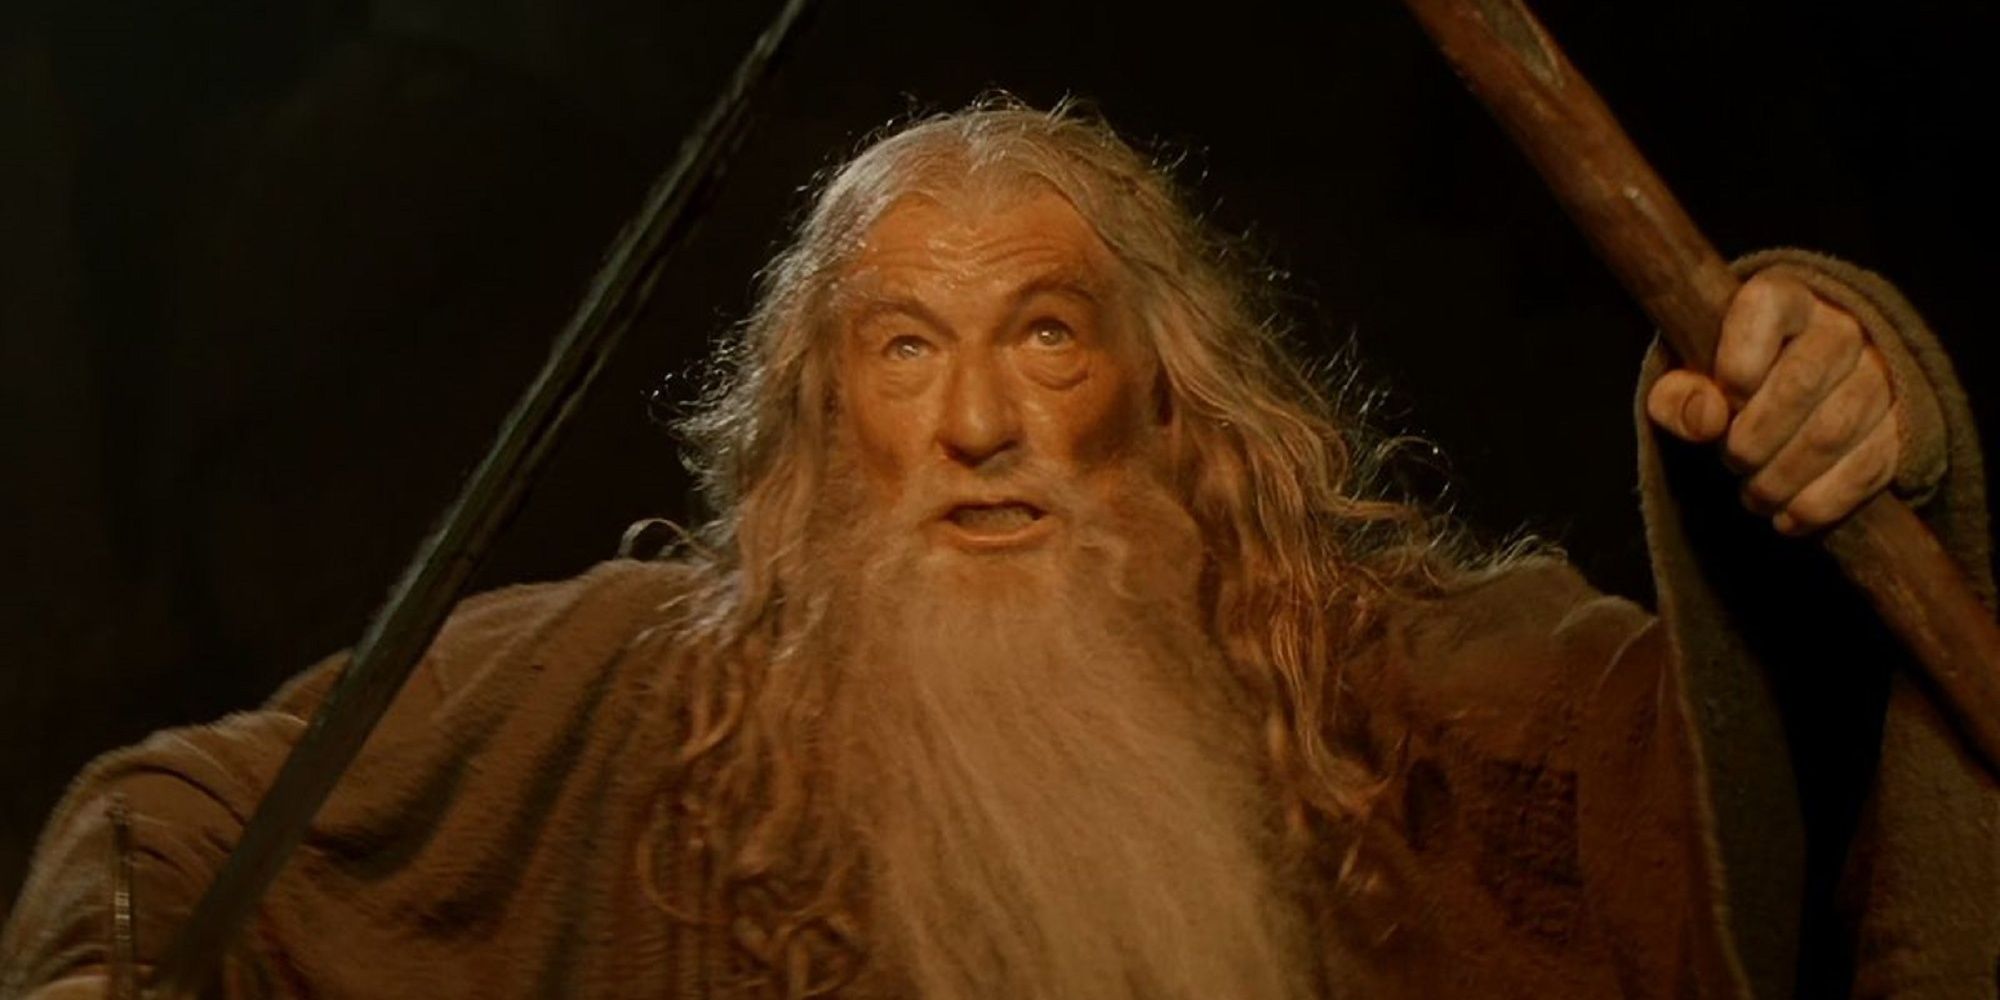 Gandalf gritando "No debe pasar" en el Balrog en Moria en La Comunidad del Anillo